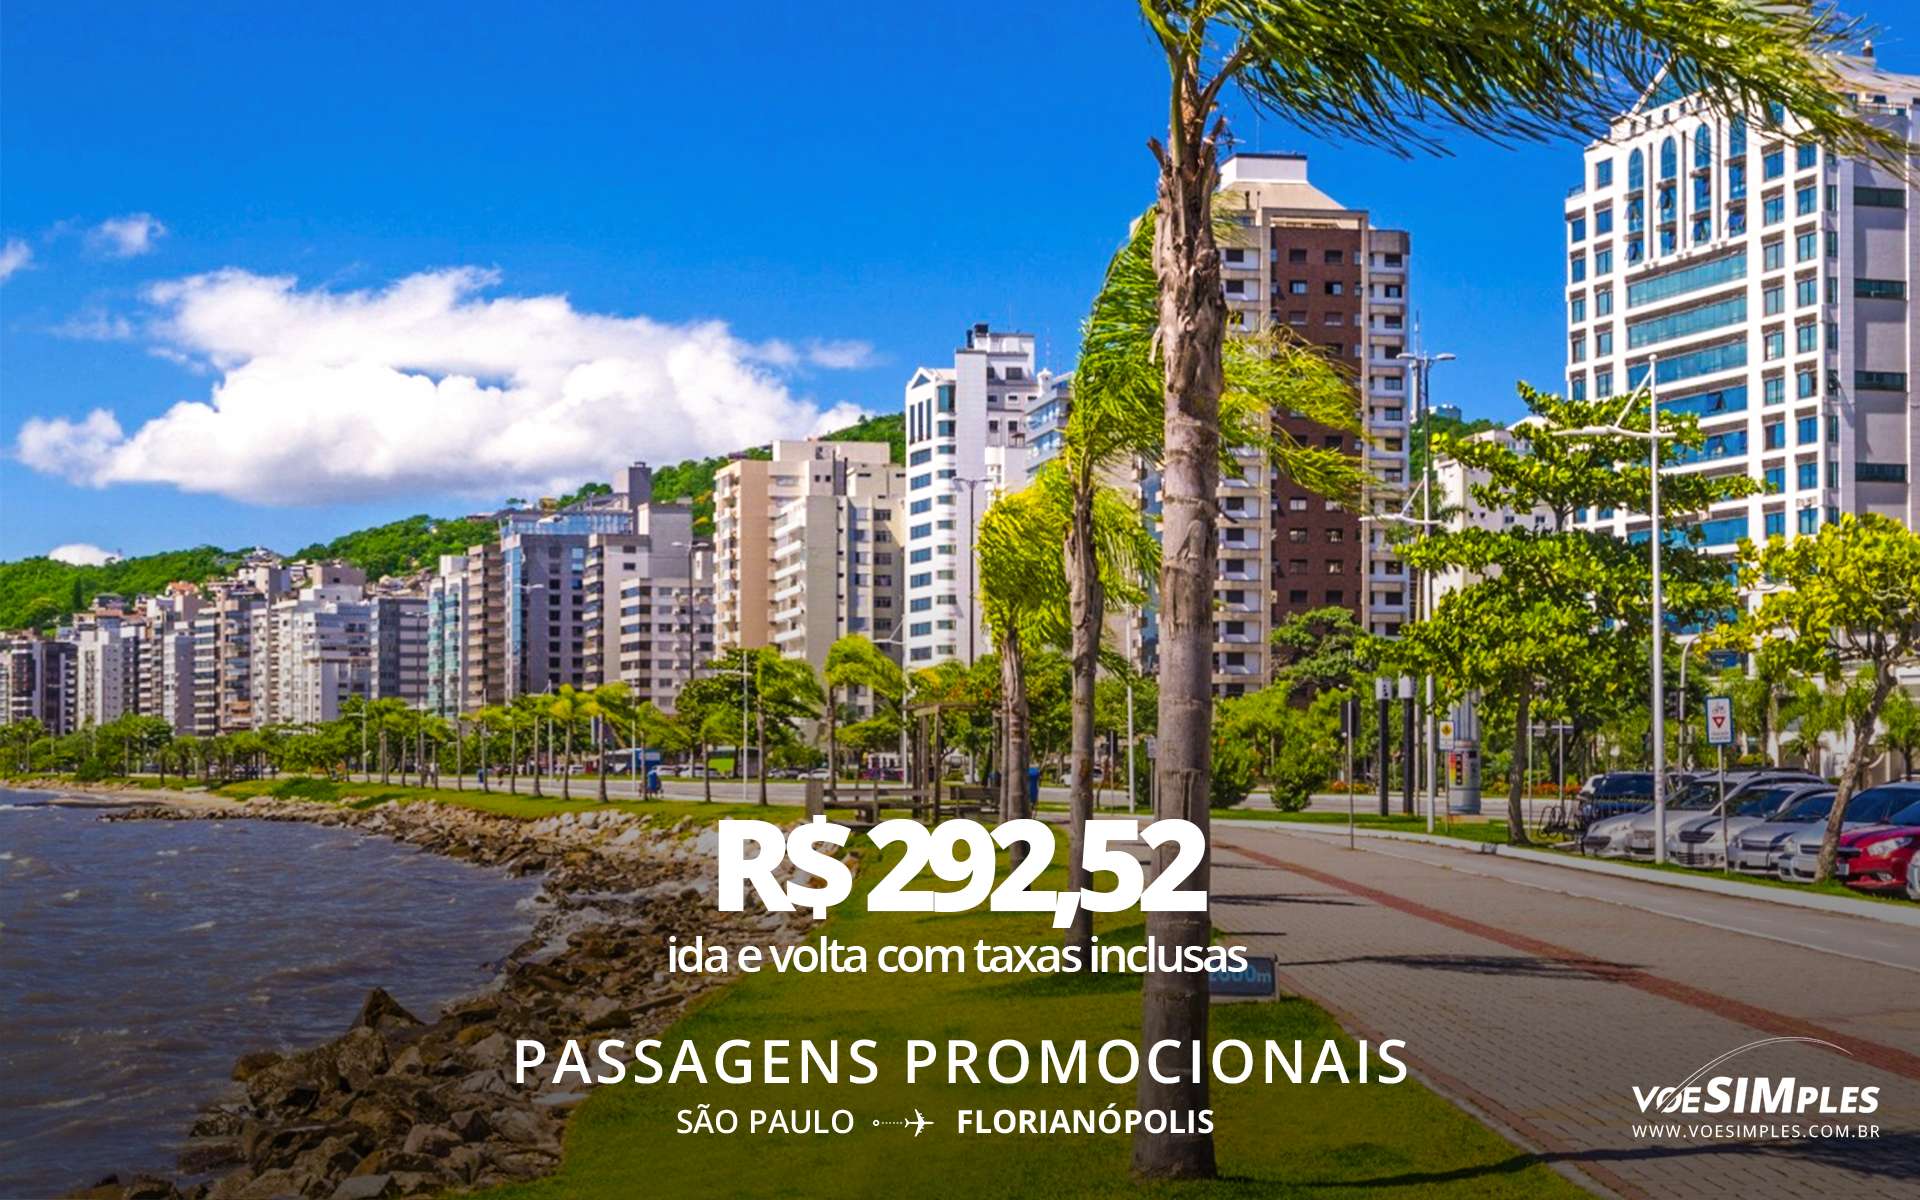 Voos online SP - Florianópolis por tempo limitado! Aproveite a oportunidade e compre sua passagem aérea pagando em até 5x sem juros no cartão de crédito.